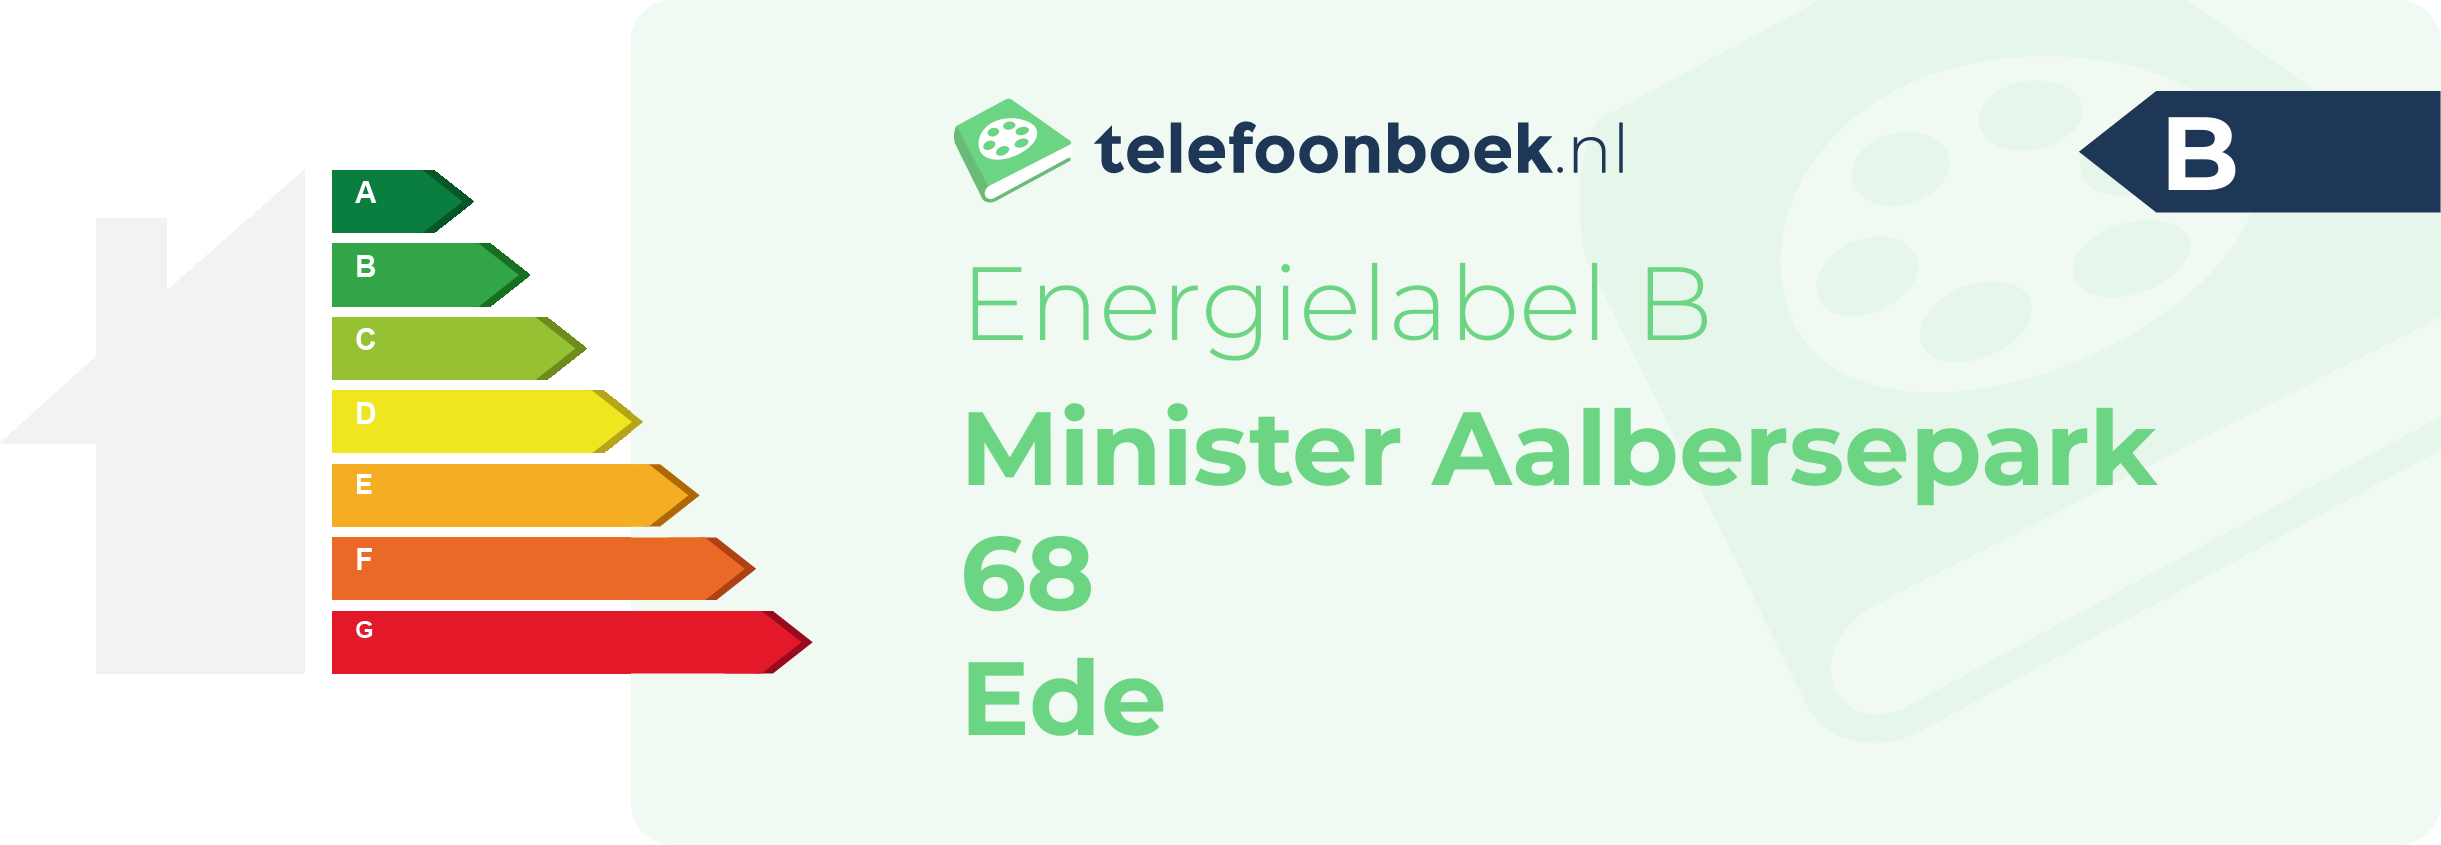 Energielabel Minister Aalbersepark 68 Ede